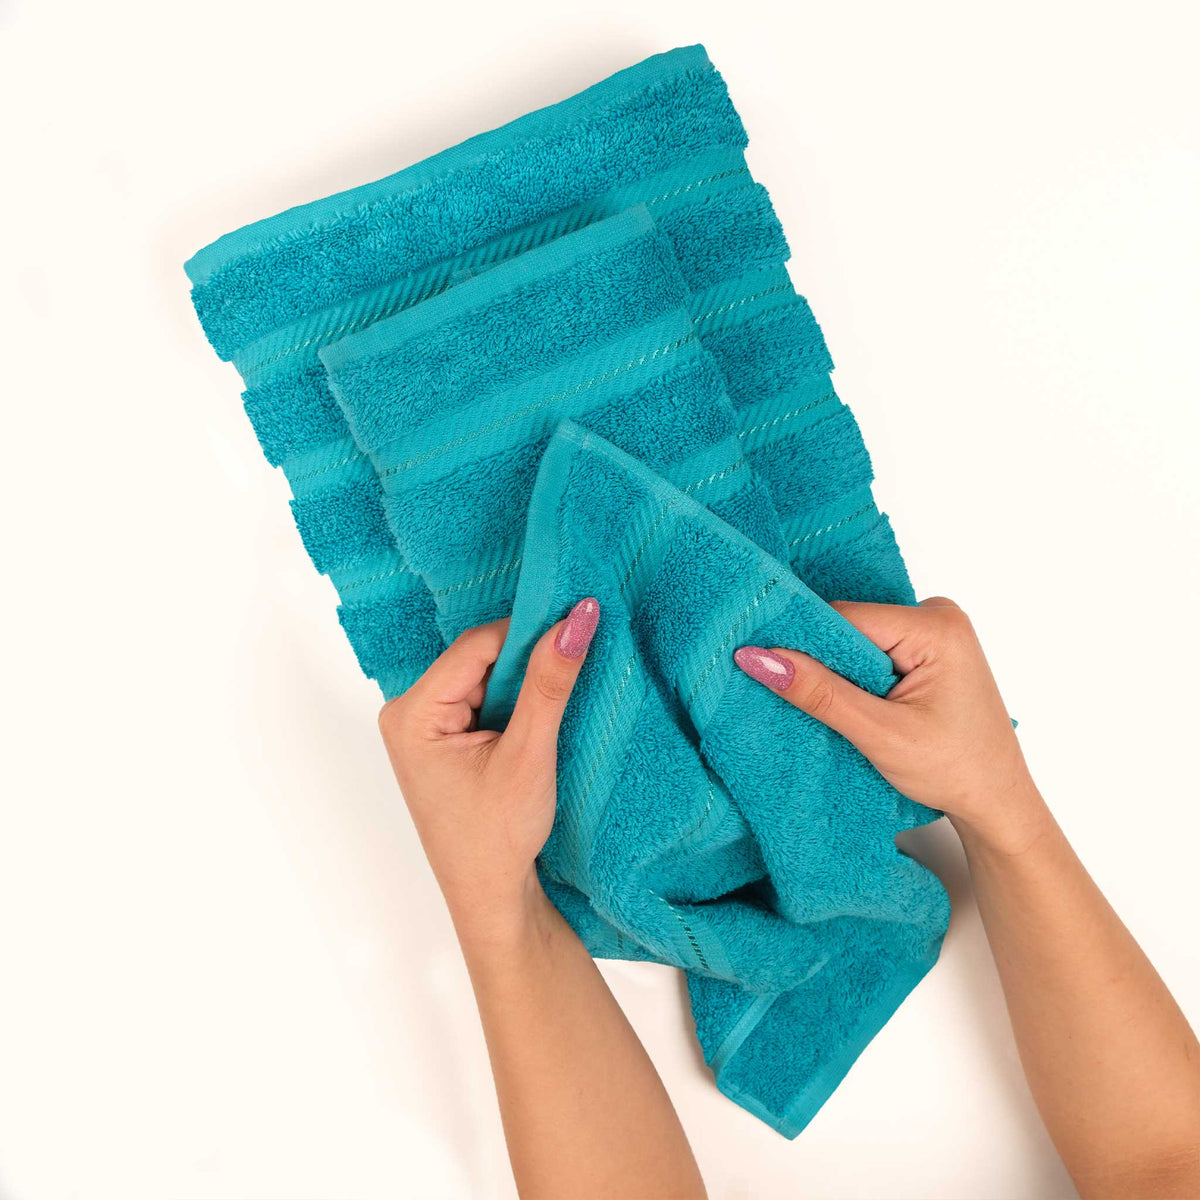 https://americansoftlinen.com/cdn/shop/articles/American-Soft-Linen-6-Piece-Turkish-Cotton-Bath-Towel-Set-Aqua-Blue-5.jpg?crop=center&height=1200&v=1695908215&width=1200